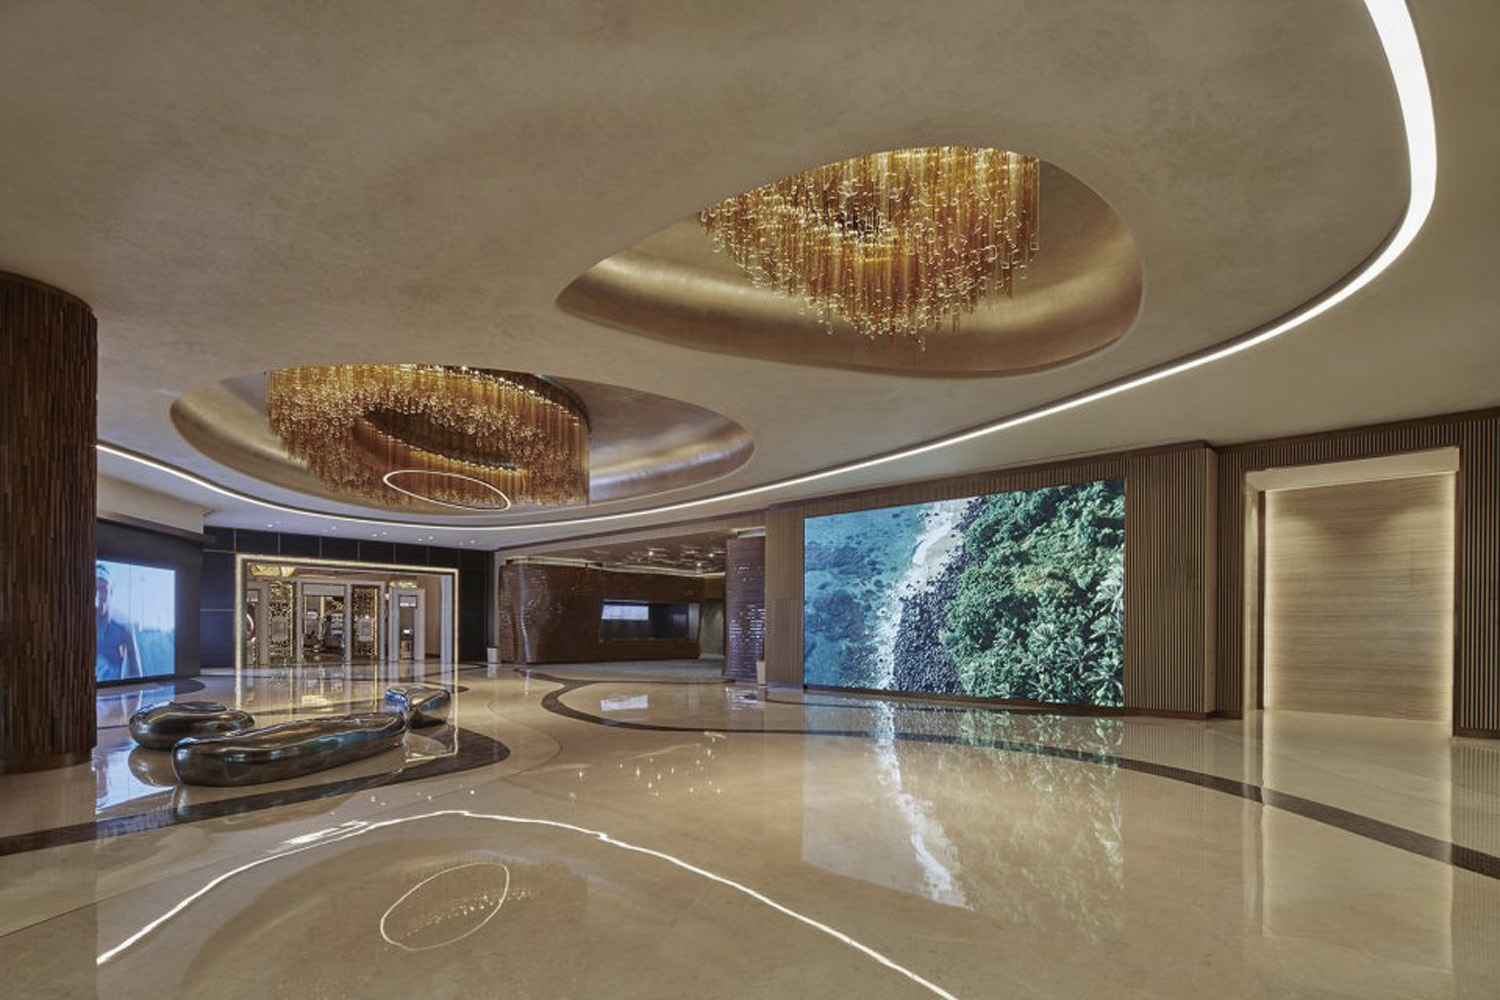 酒店商场走廊空间设计